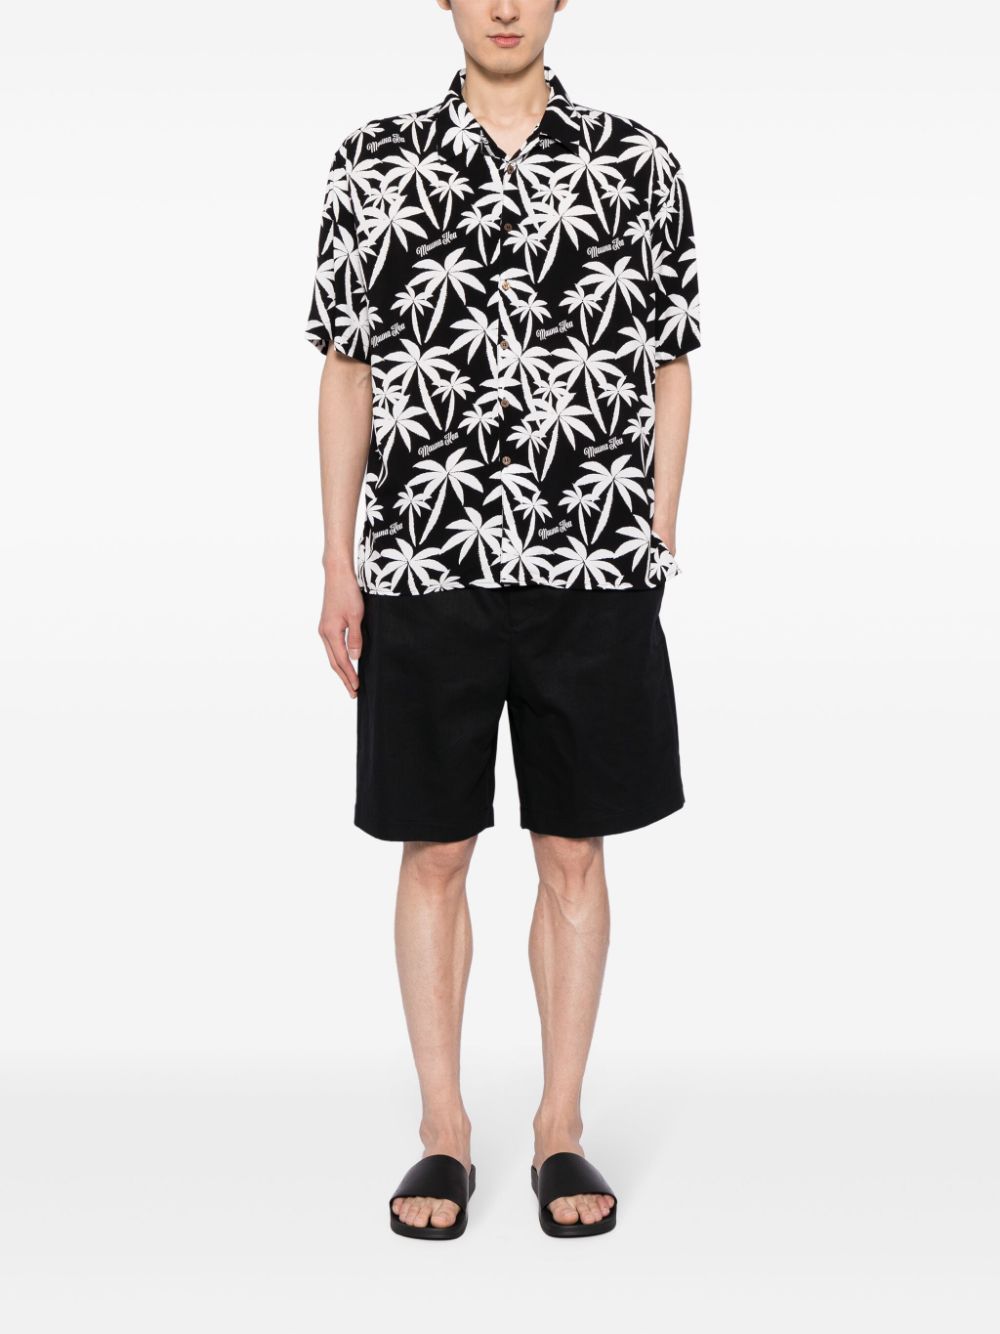 Mauna Kea Overhemd met palmboomprint - Zwart